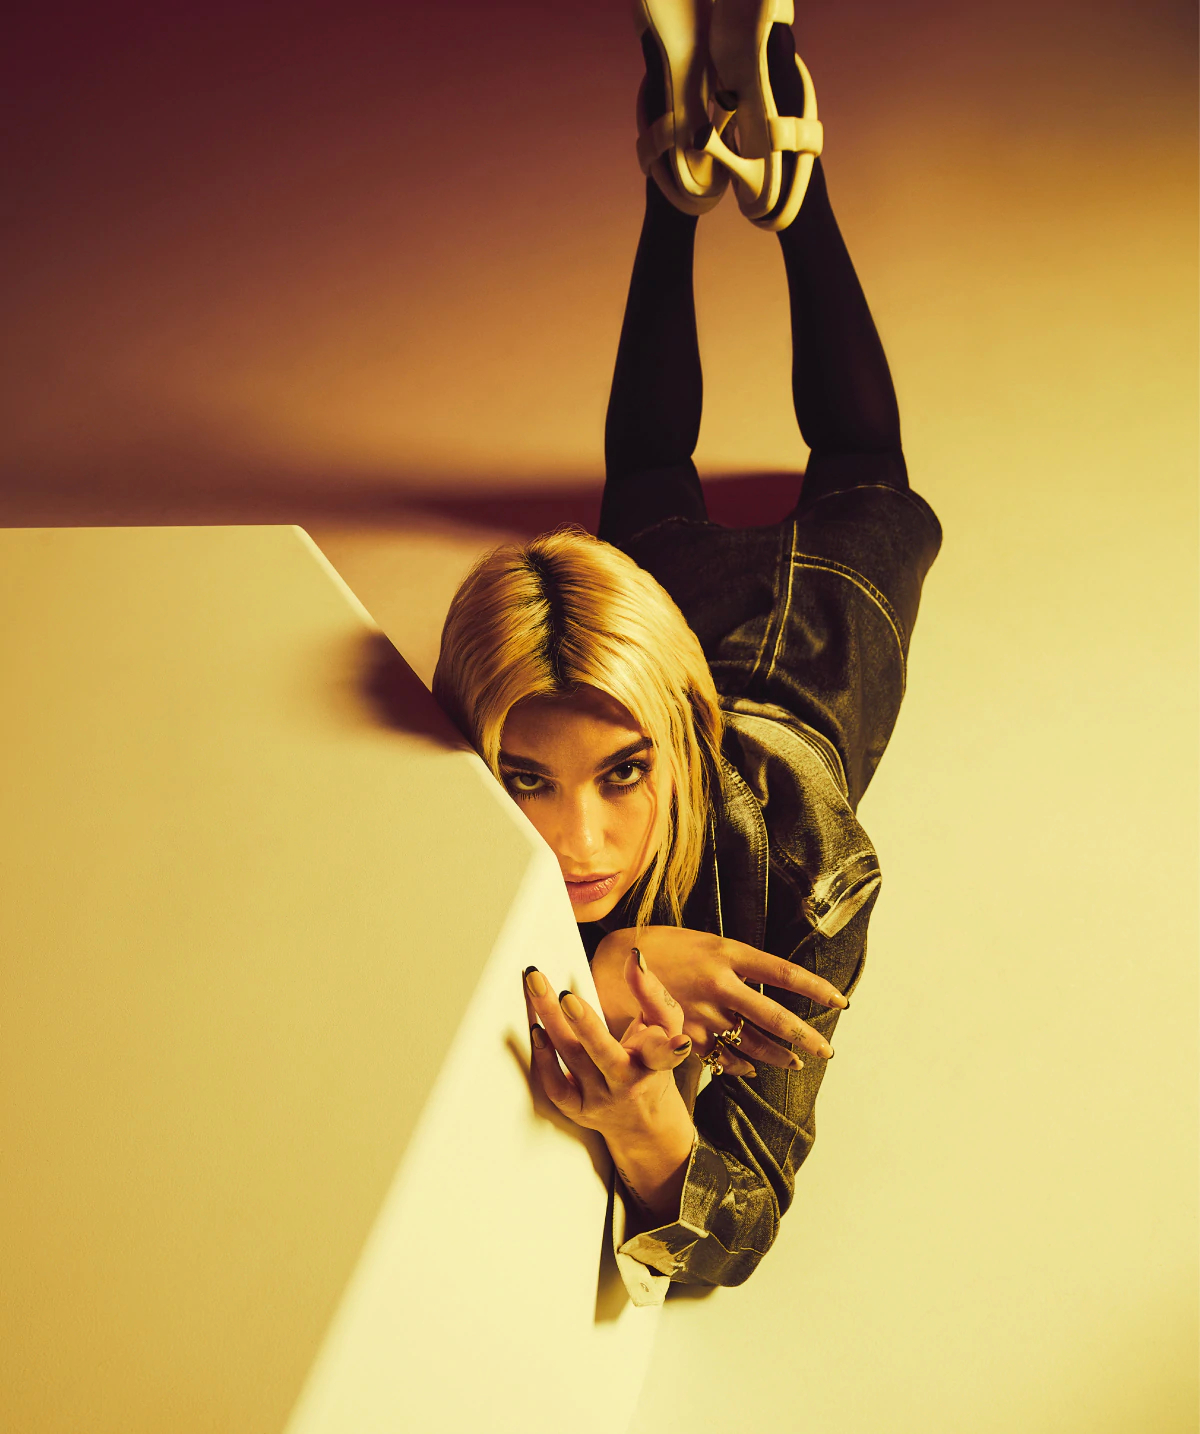 Fotos n°4 : Dua Lipa's Down Under para Vogue